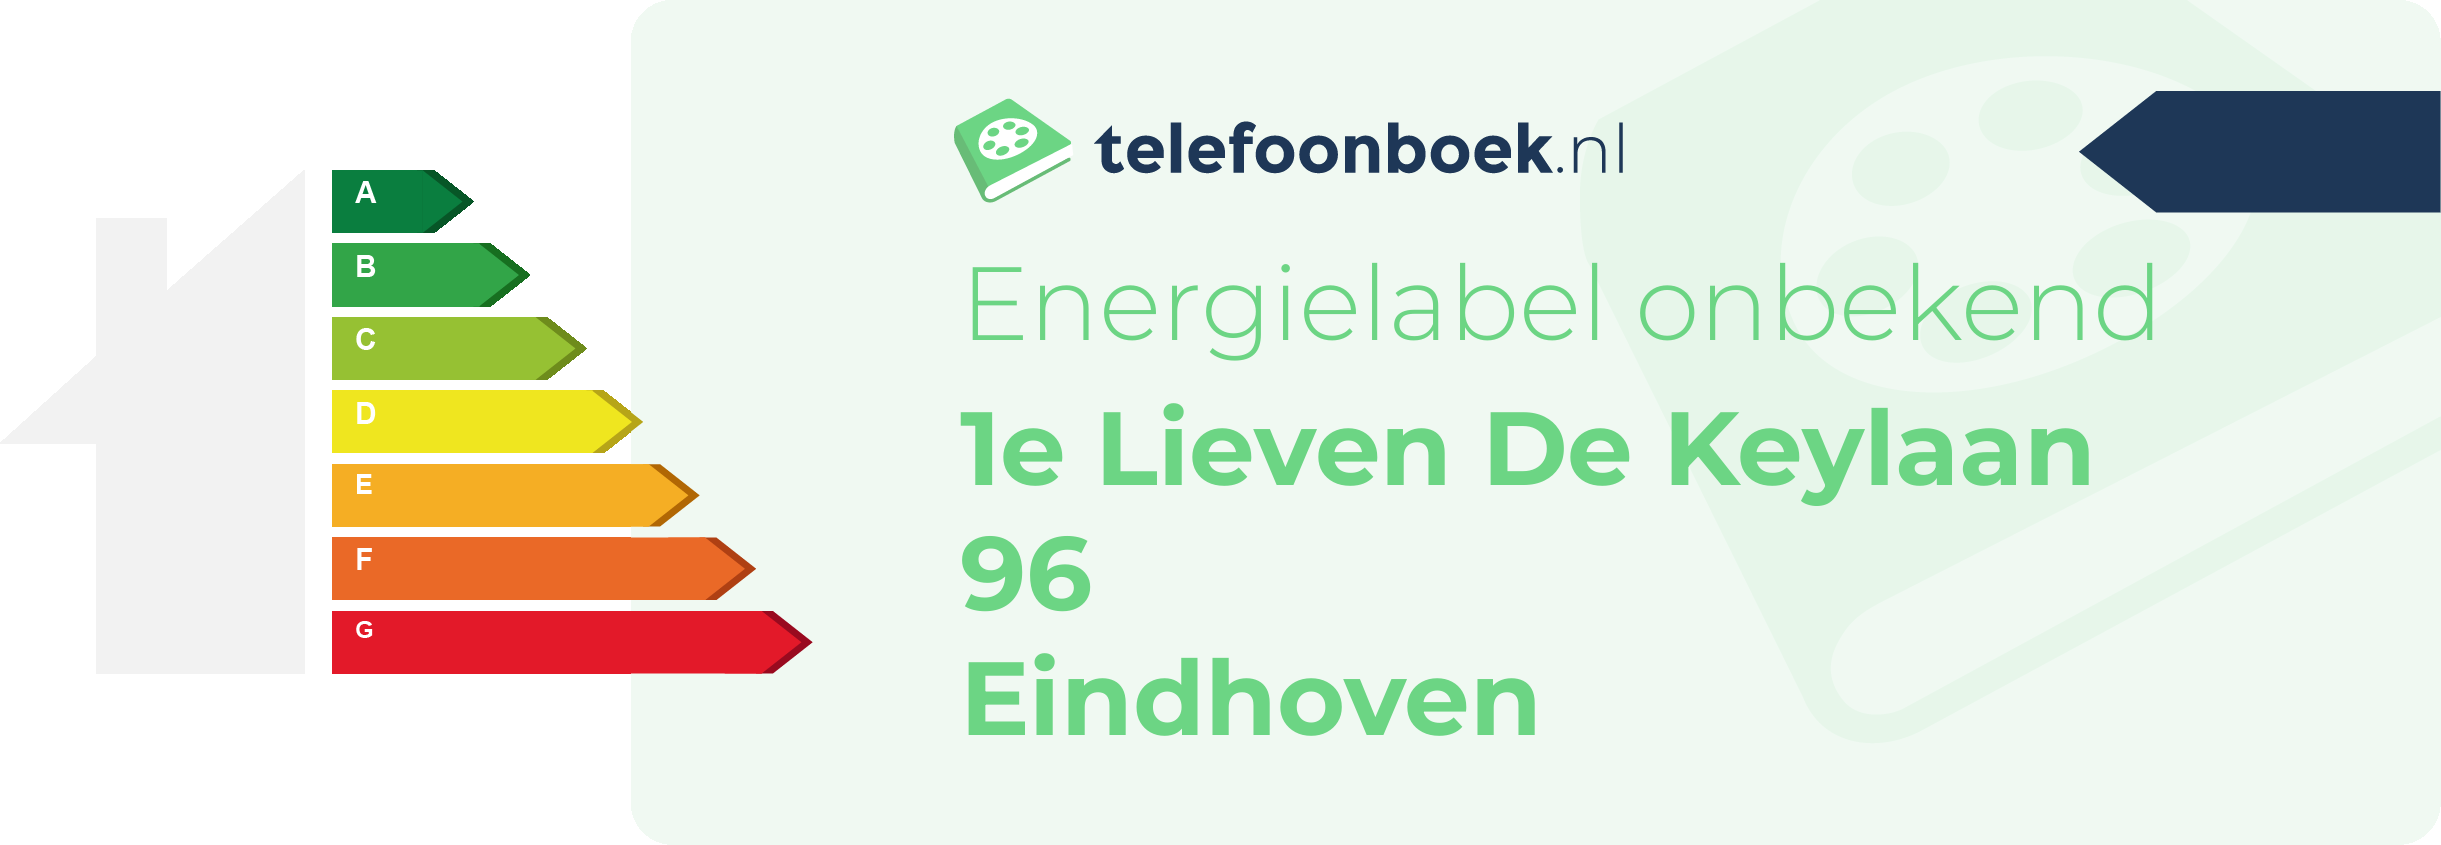 Energielabel 1e Lieven De Keylaan 96 Eindhoven